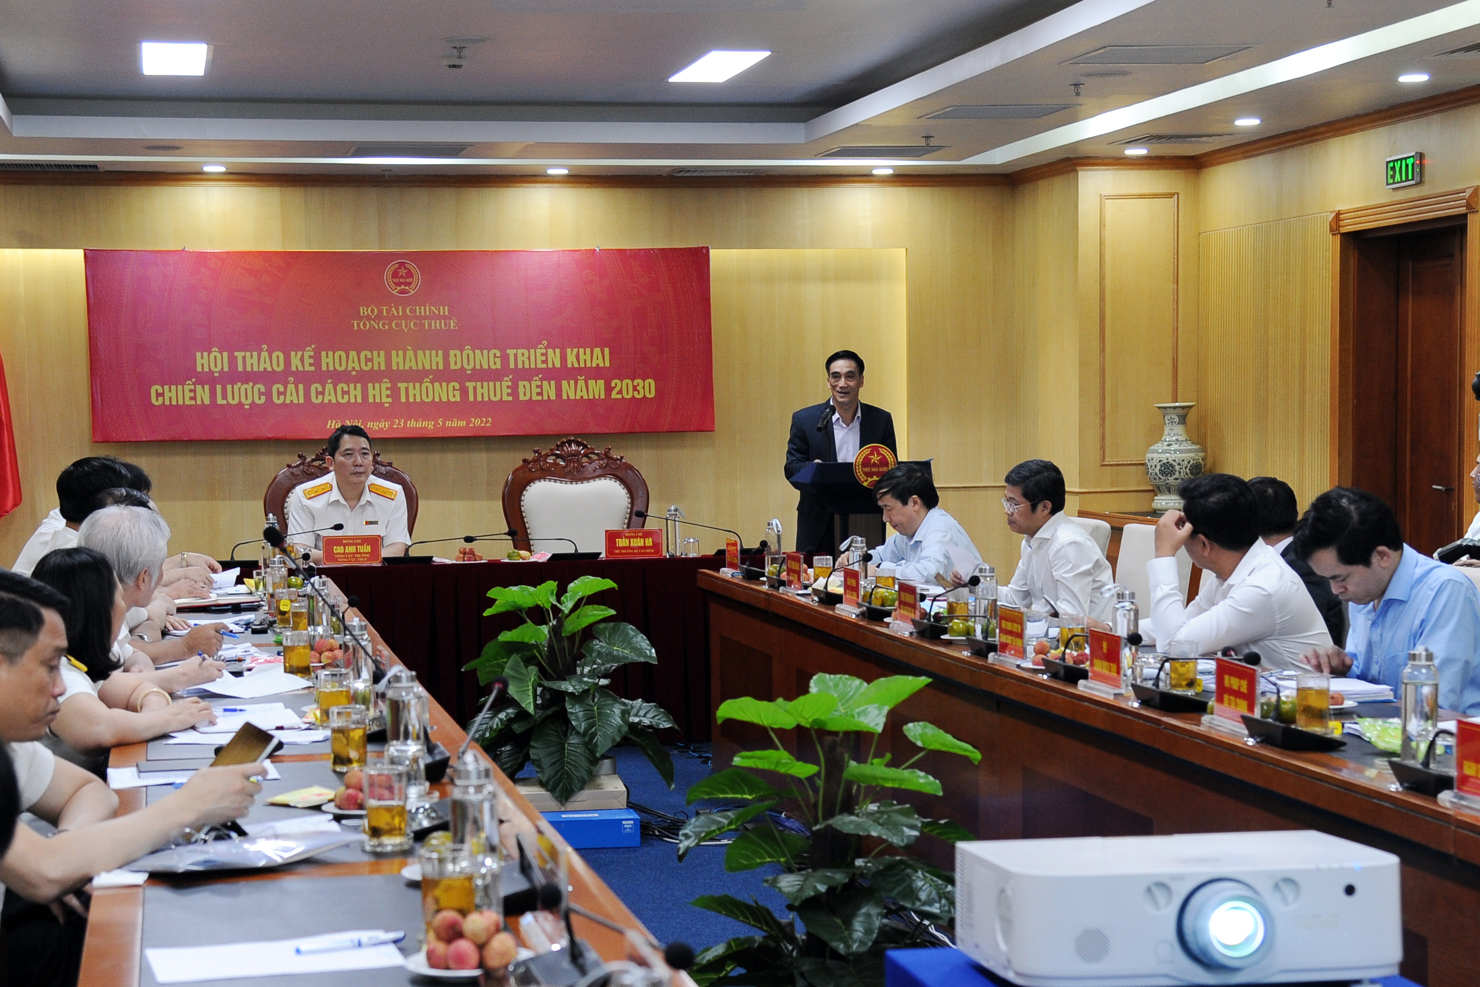 Thứ trưởng Bộ Tài chính Trần Xuân Hà phát biểu chỉ đạo tại Hội thảo "Kế hoạch hành động triển khai Chiến lược cải cách hệ thống thuế đến năm 2030".